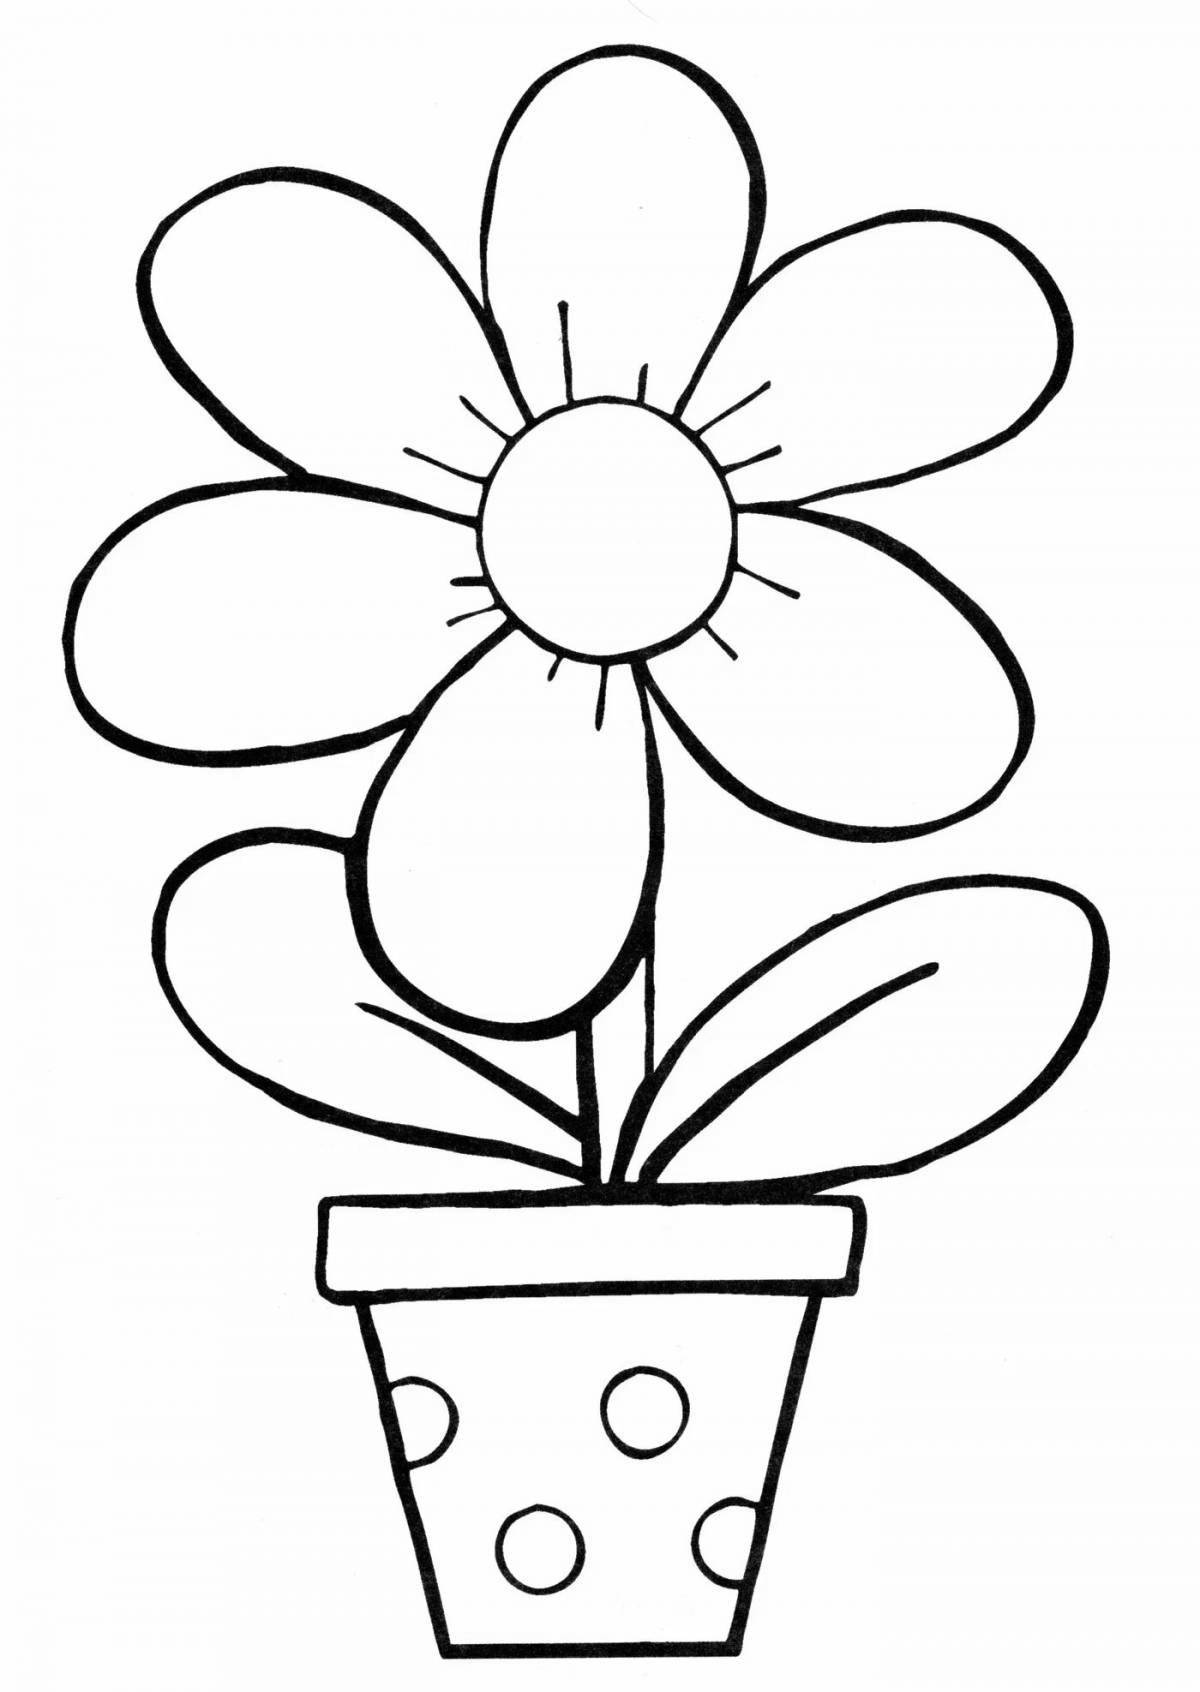 Яркая раскраска цветок семицветик для детей 3-4 лет